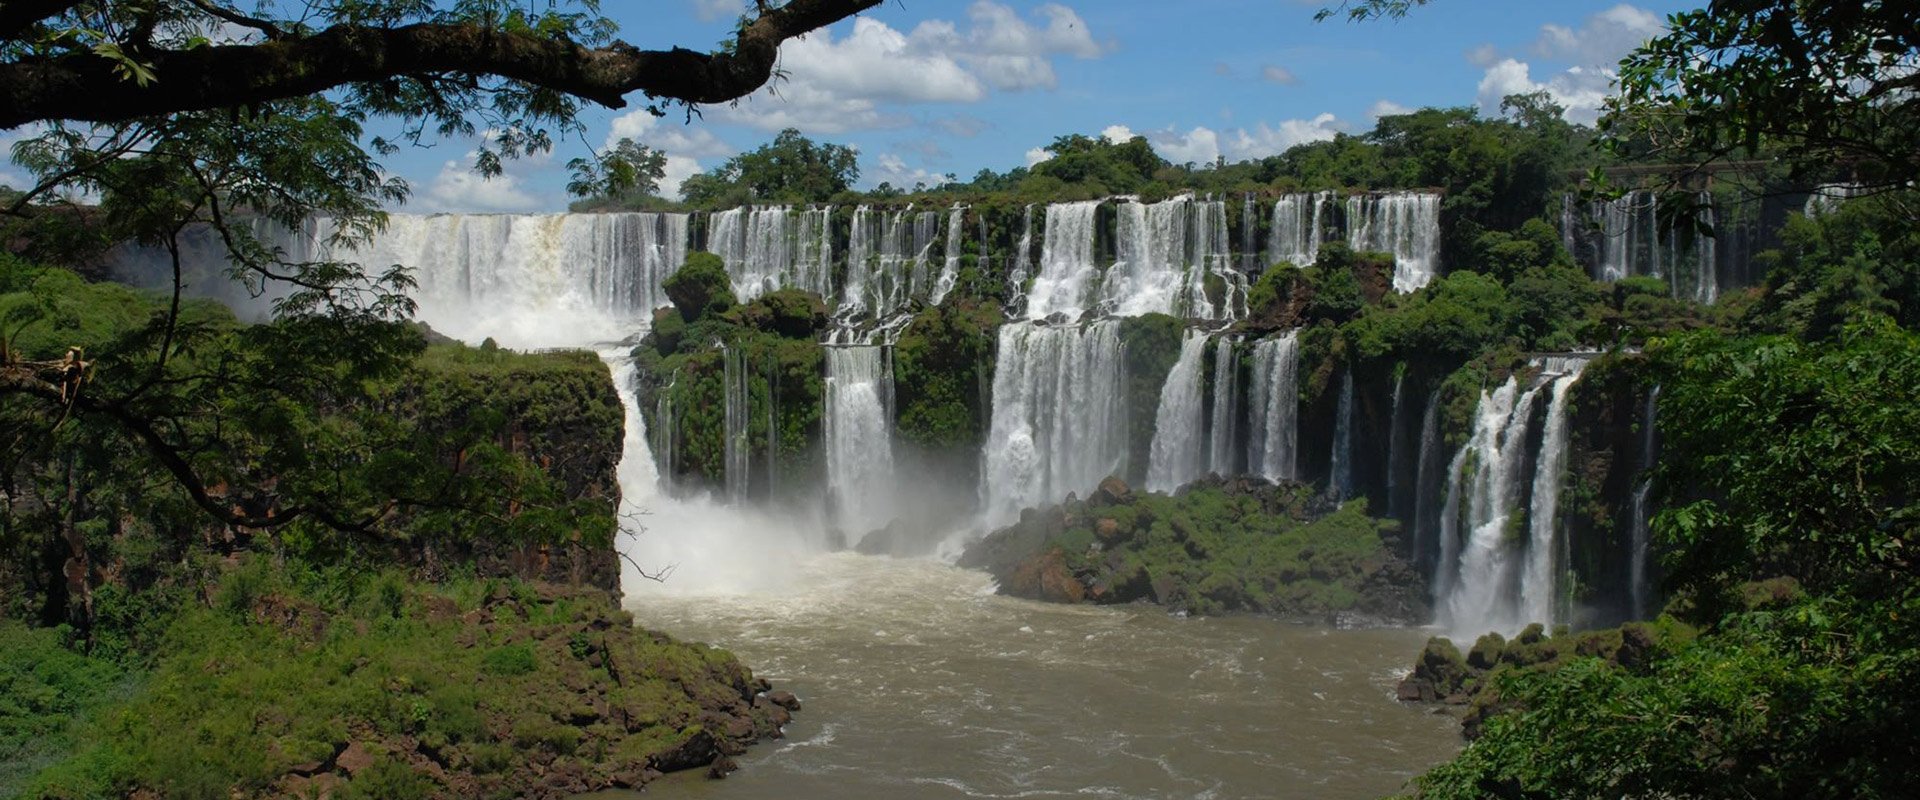 argentine chutes iguazu immersion nature dépaysement cascade jungle unesco parc national cataratas découverte merveille